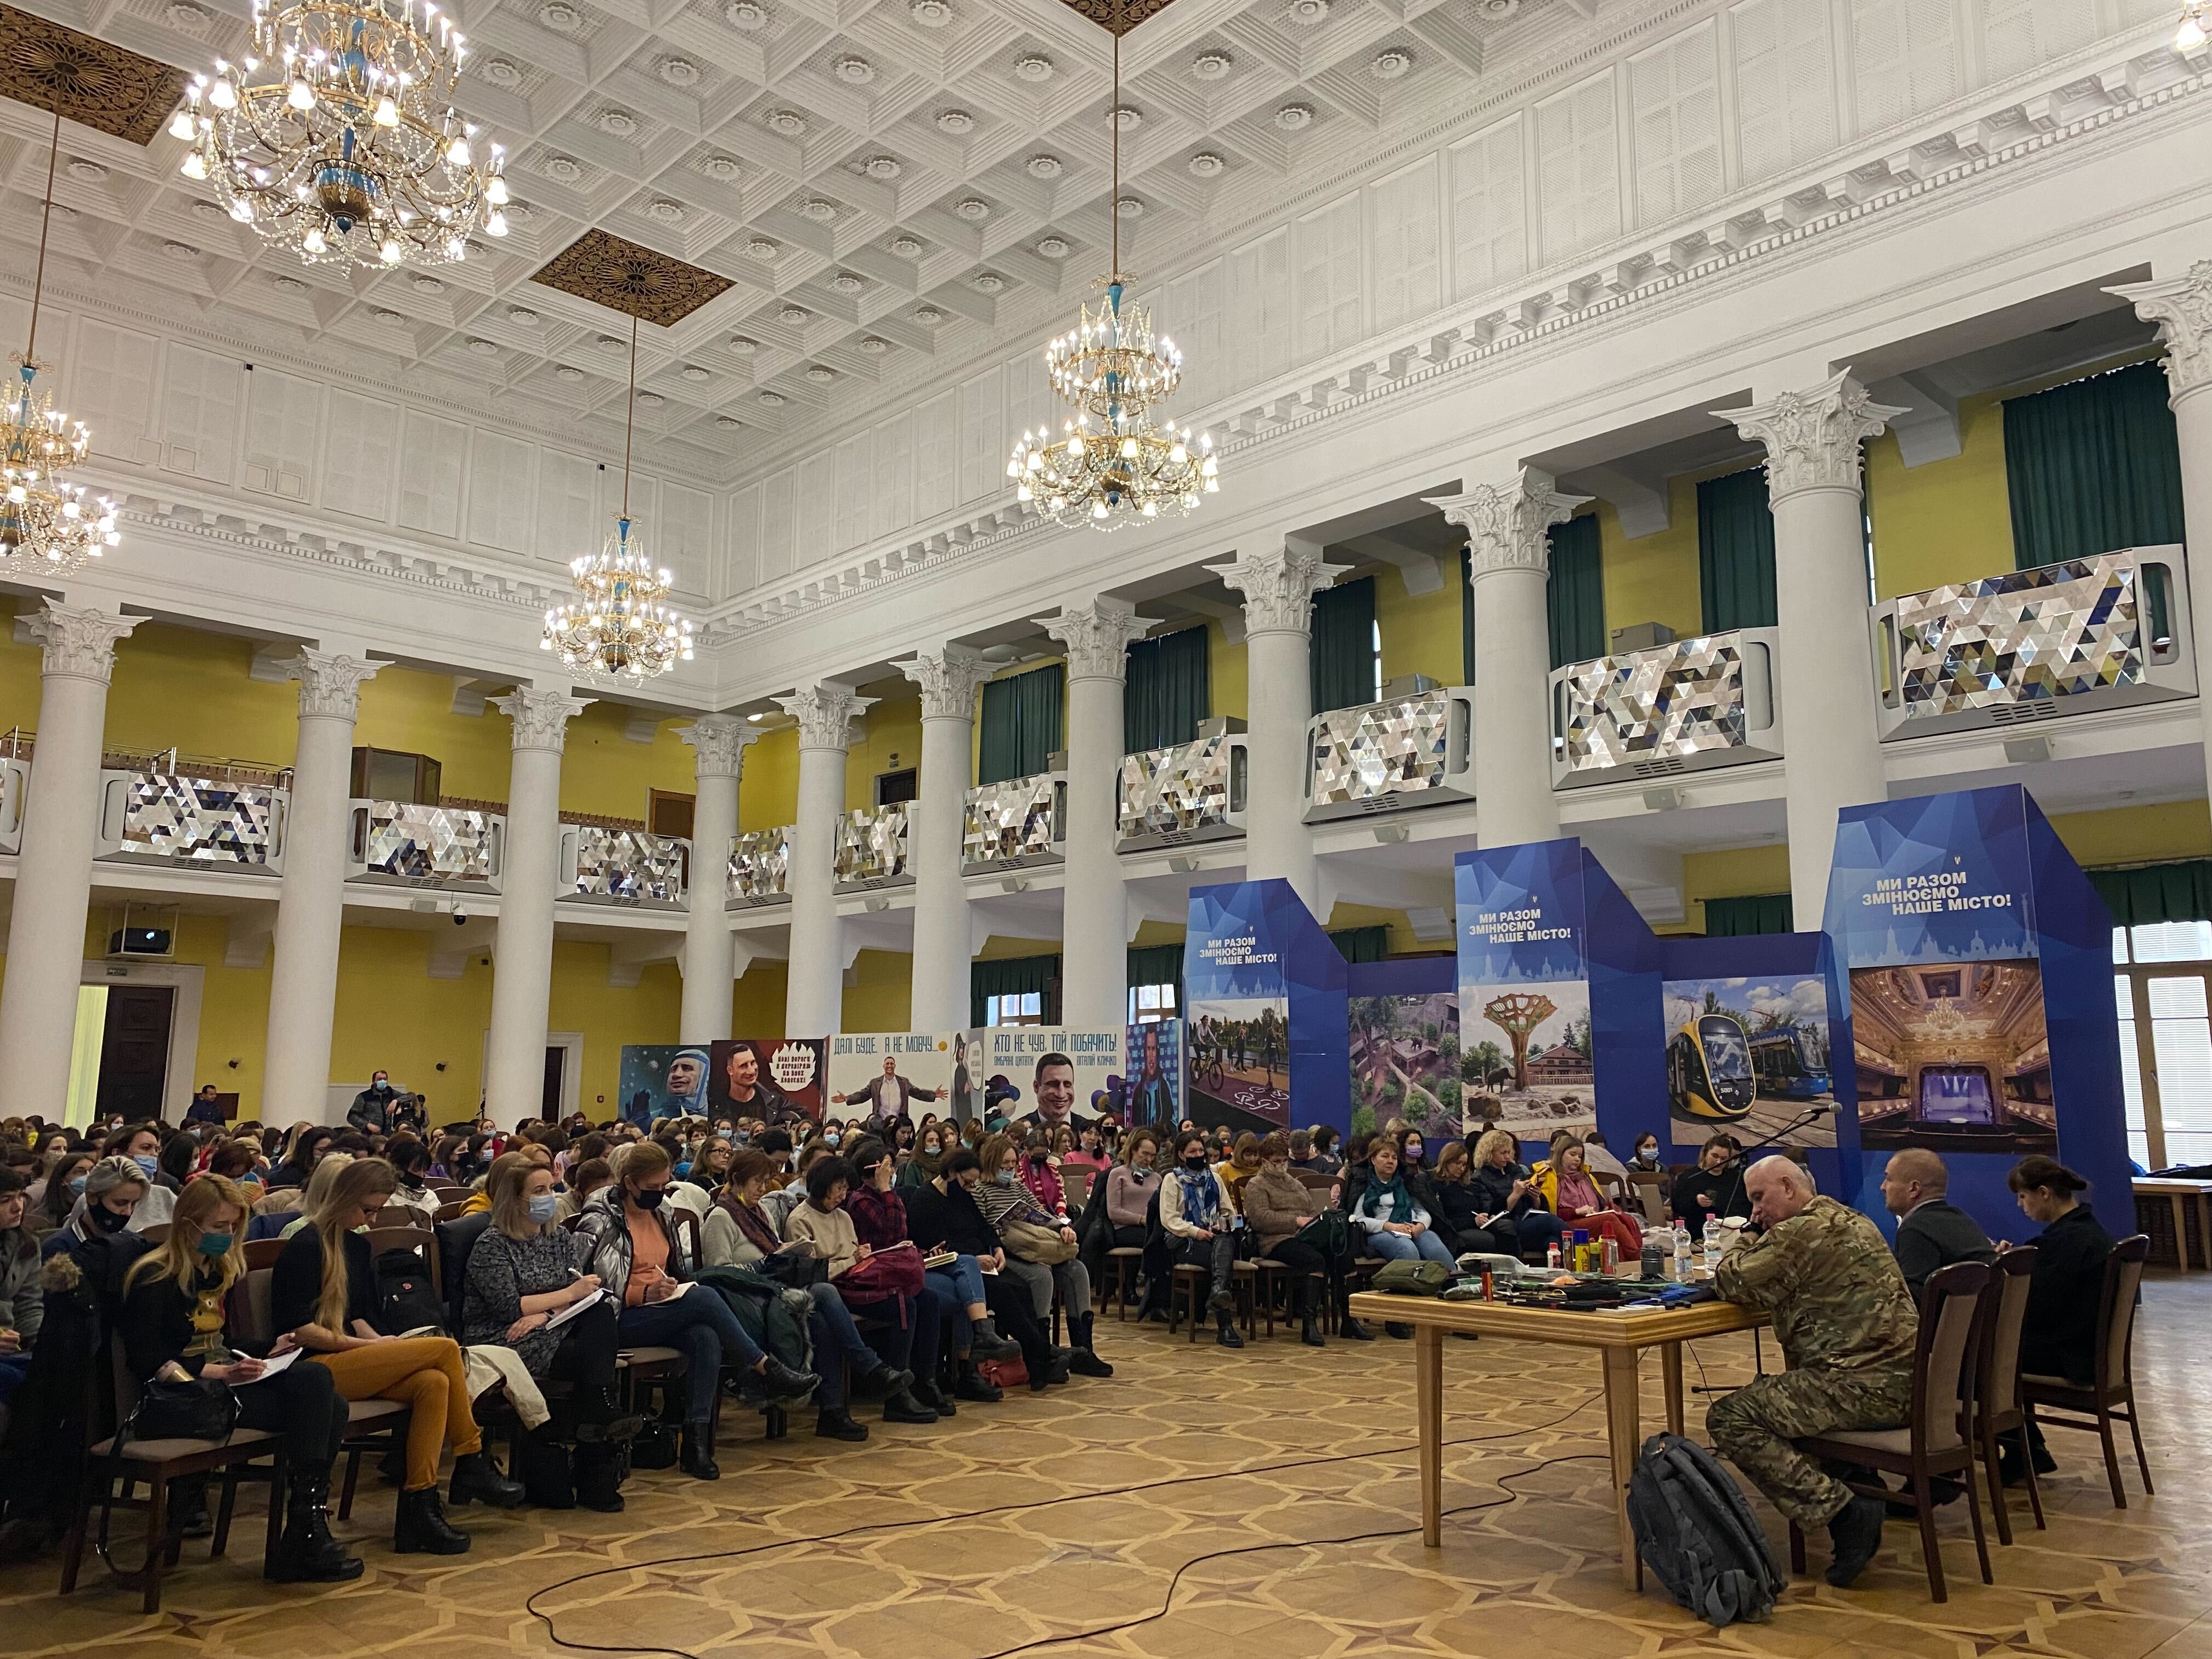 Sabato, circa 240 donne hanno partecipato all'addestramento di sopravvivenza presso il municipio di Kiev.